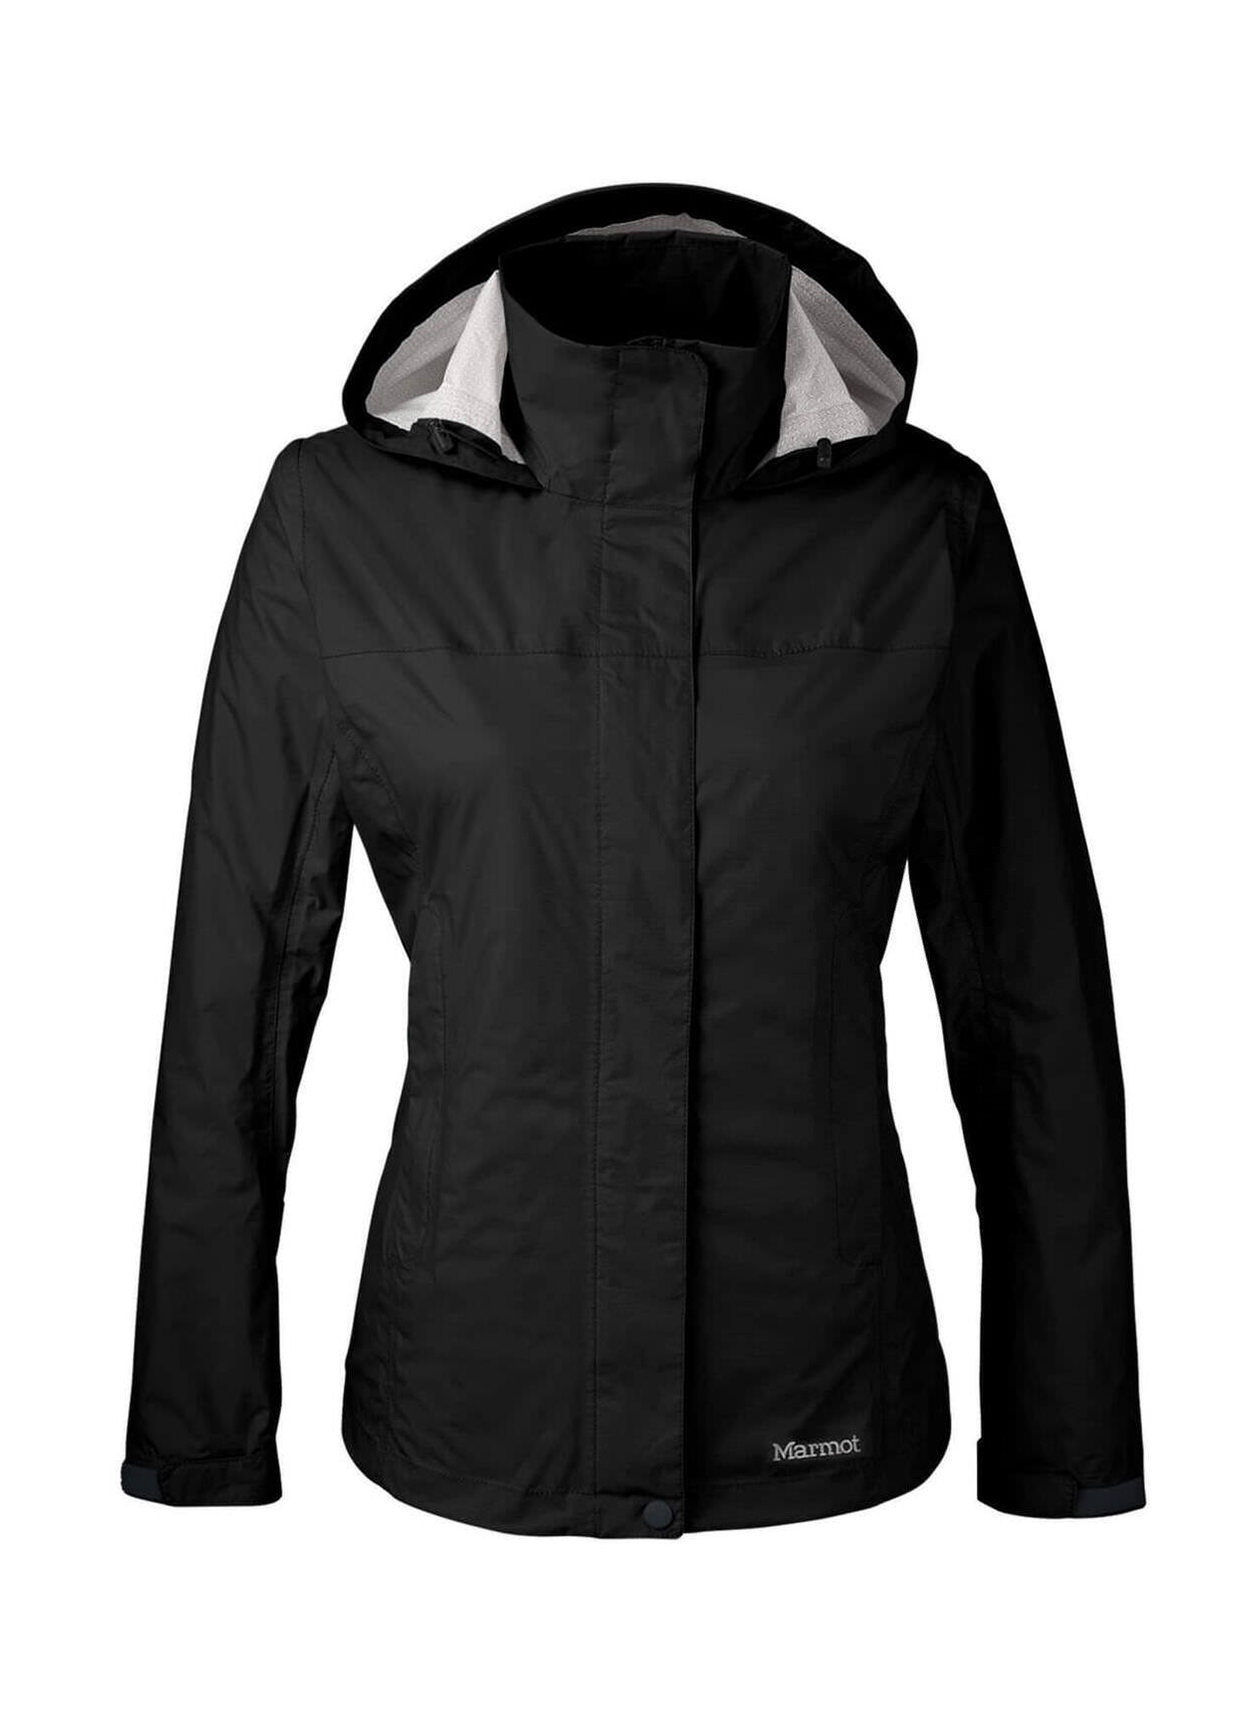 Marmot Women's Black Precipitation Eco Jacket